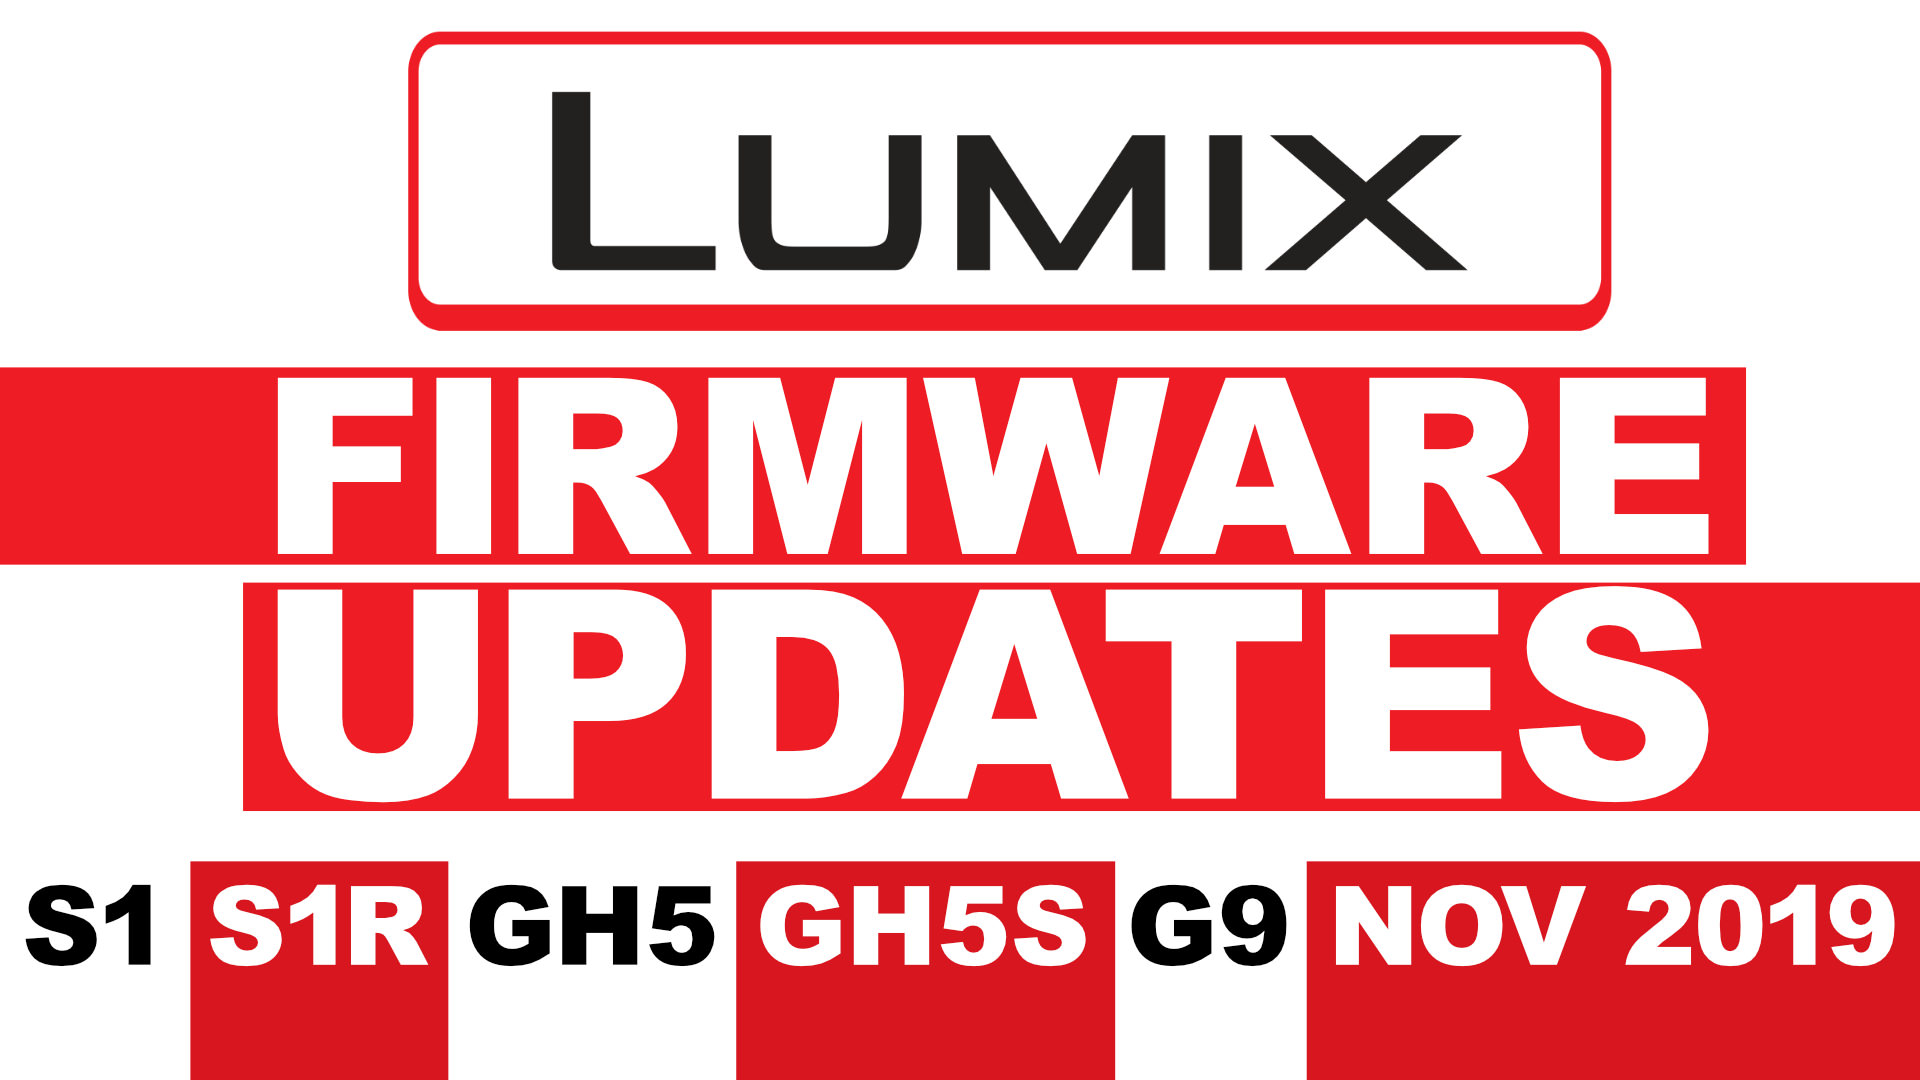 LUMIX S1, S1R, GH5, GH5S, G9 November 2019 Firmware Updates